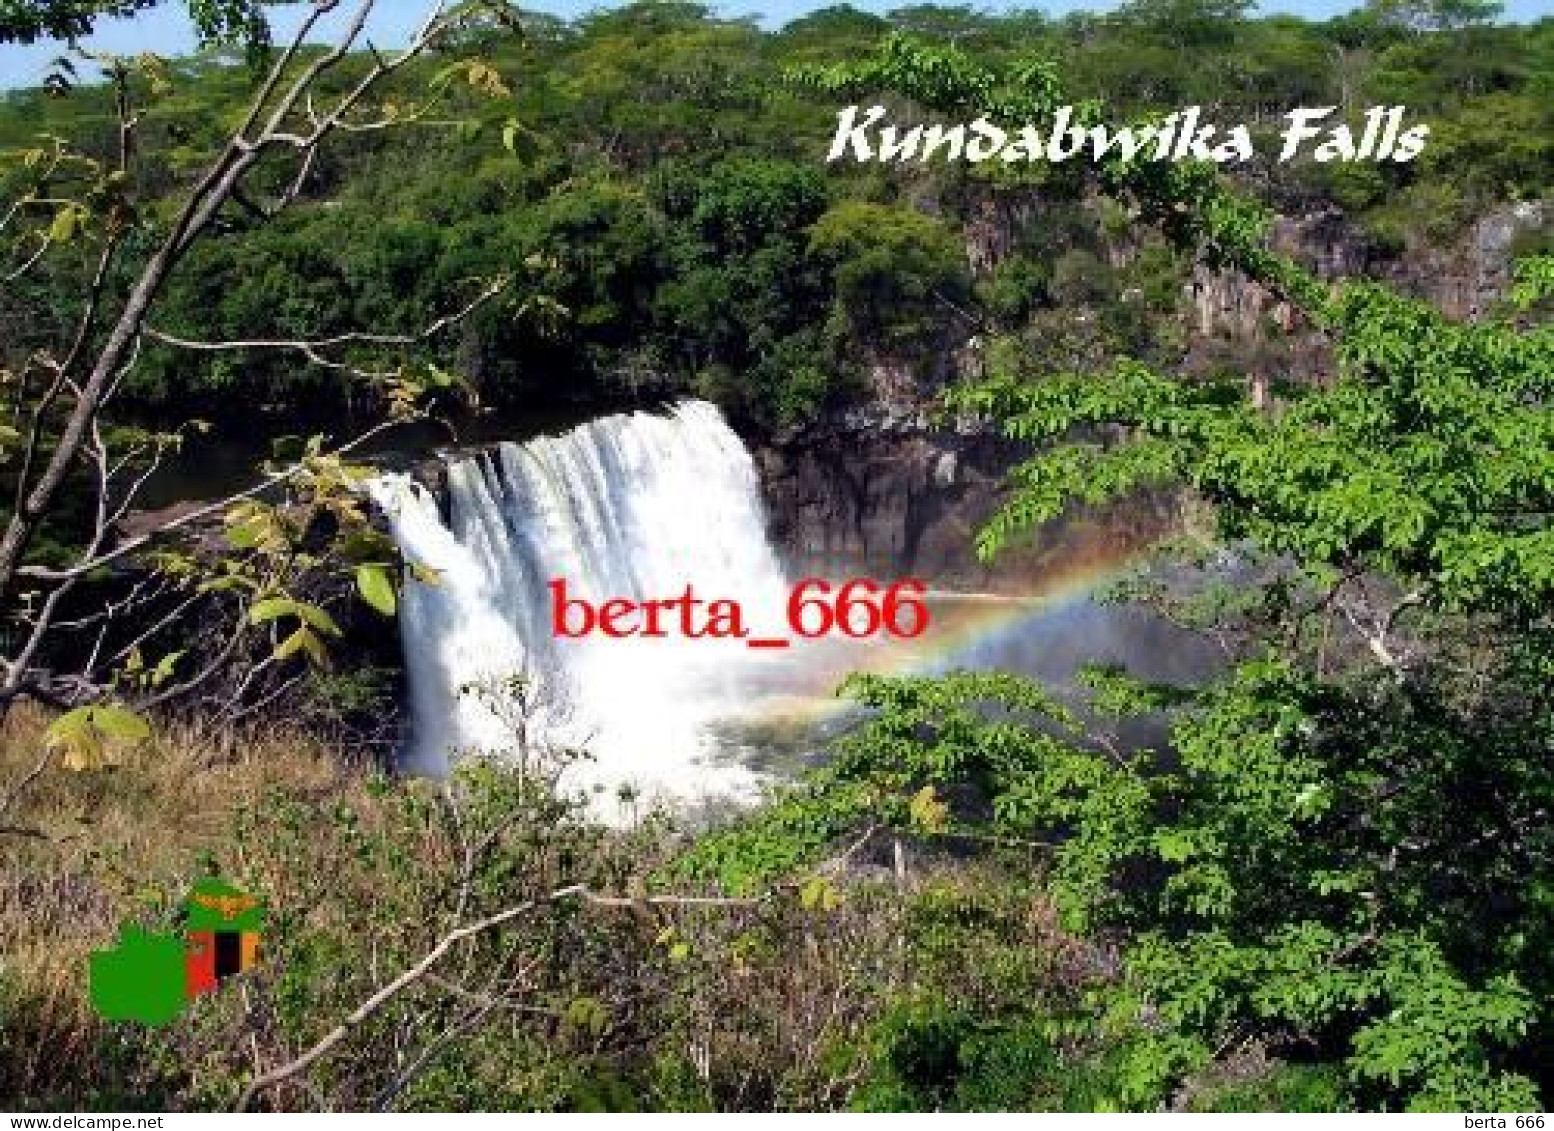 Zambia Kundabwika Falls New Postcard - Zambia